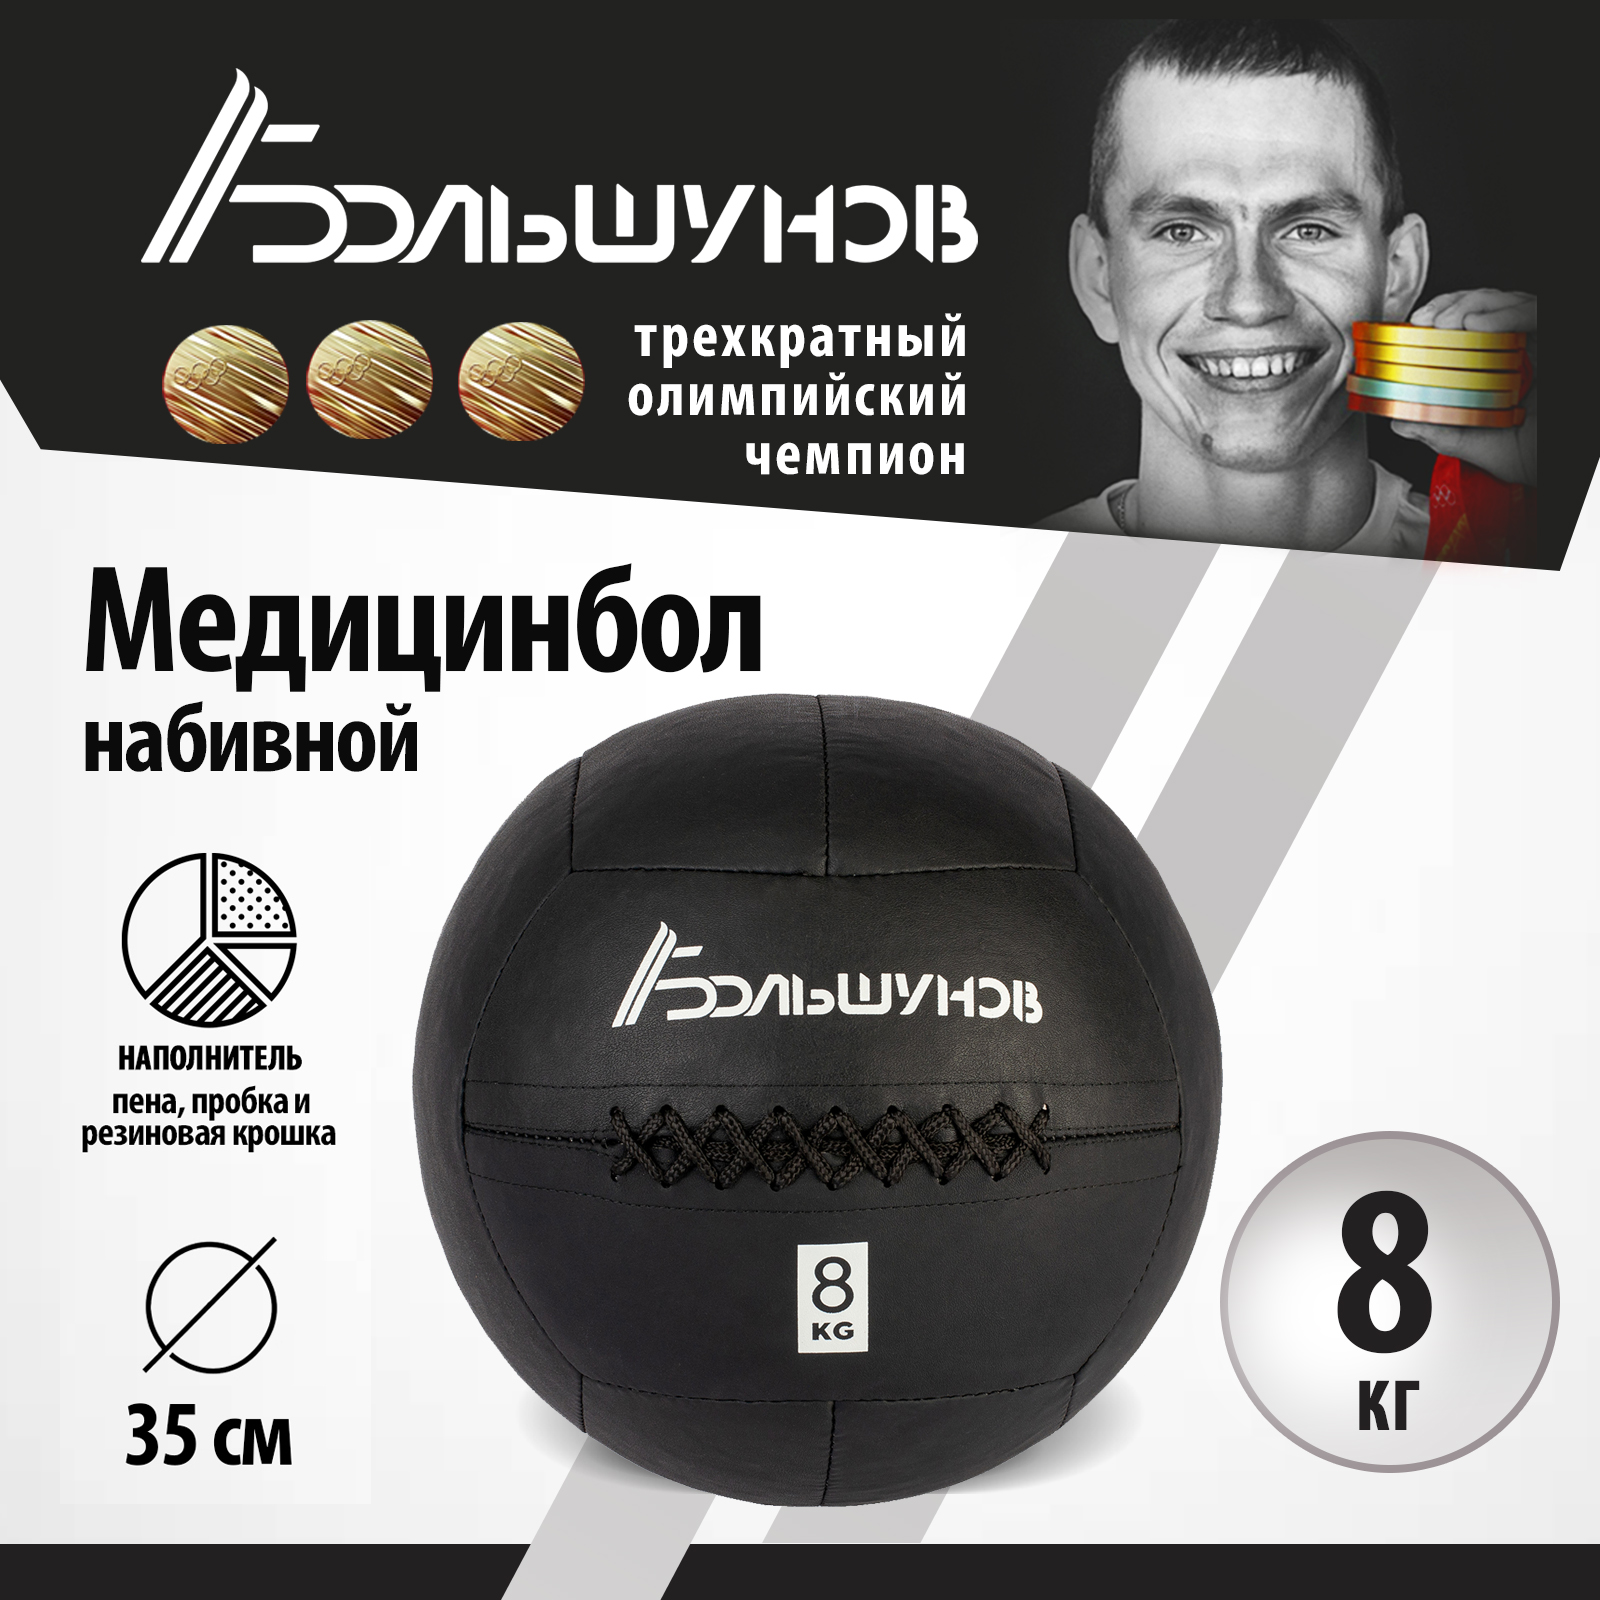 Медбол Александр Большунов, 35см, 8 кг